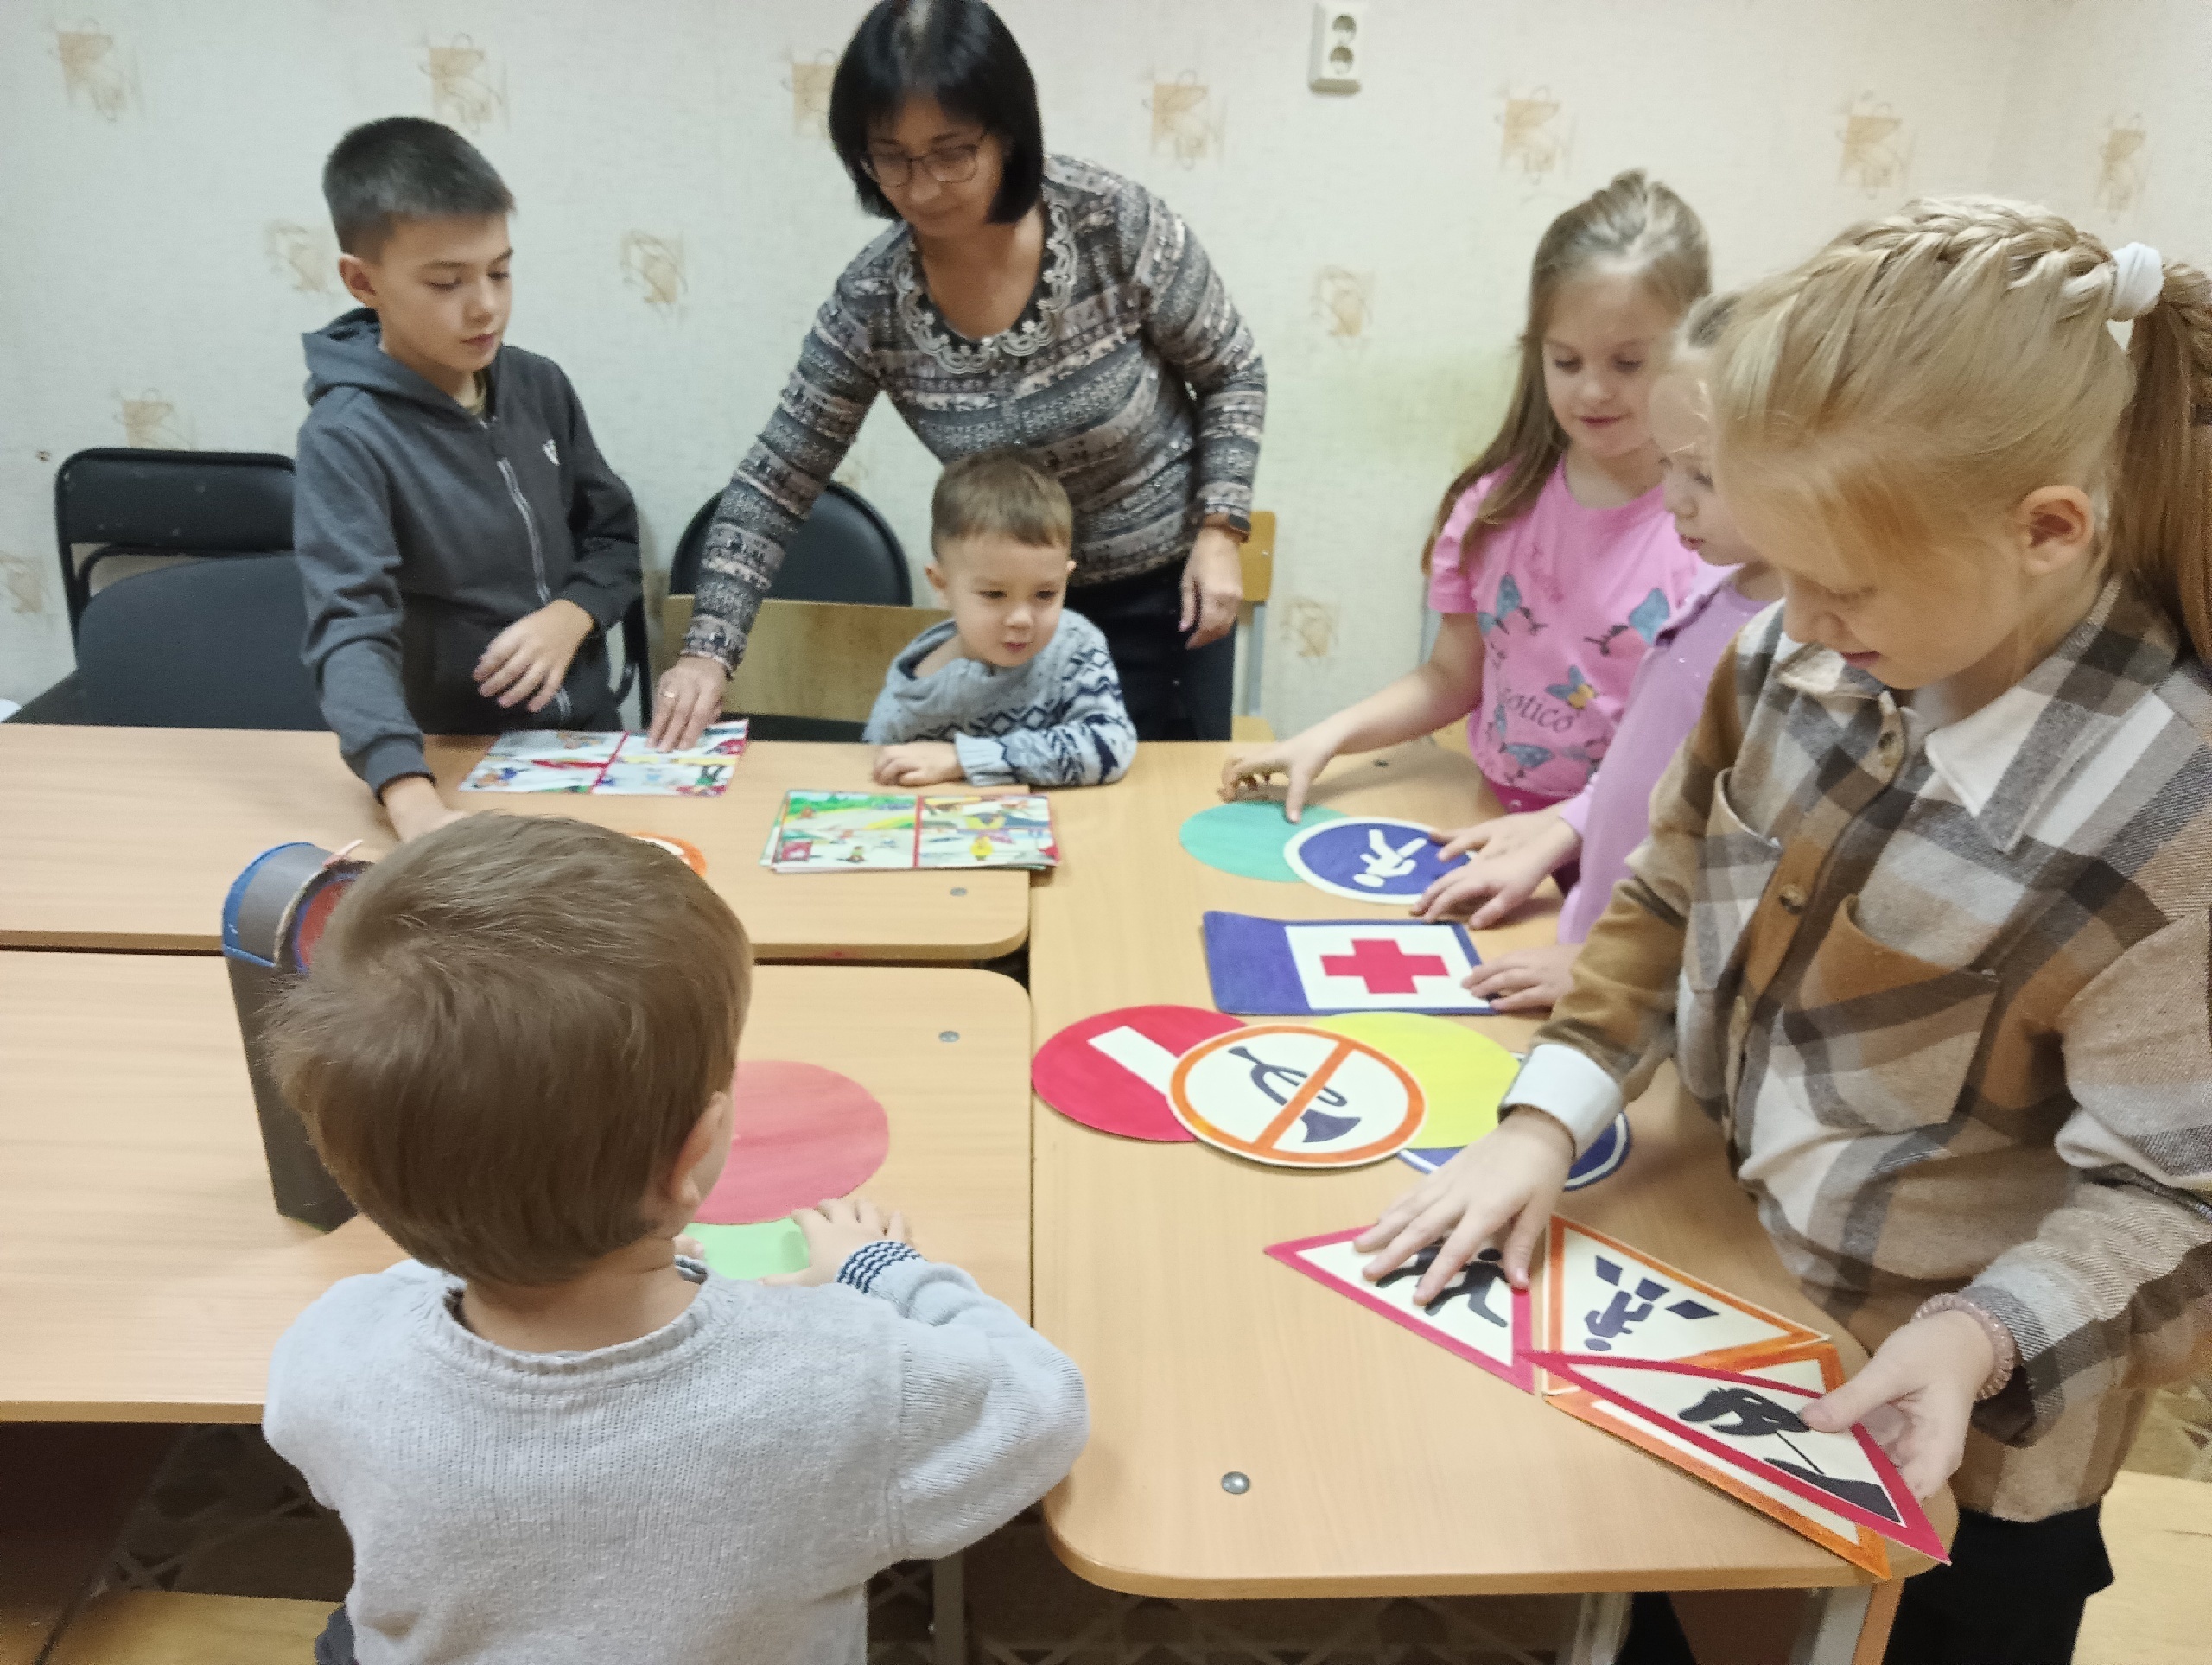 16 ноября педагог ДО Лиля Ахатовна Хайруллина провела познавательную квиз-игру "Осторожно